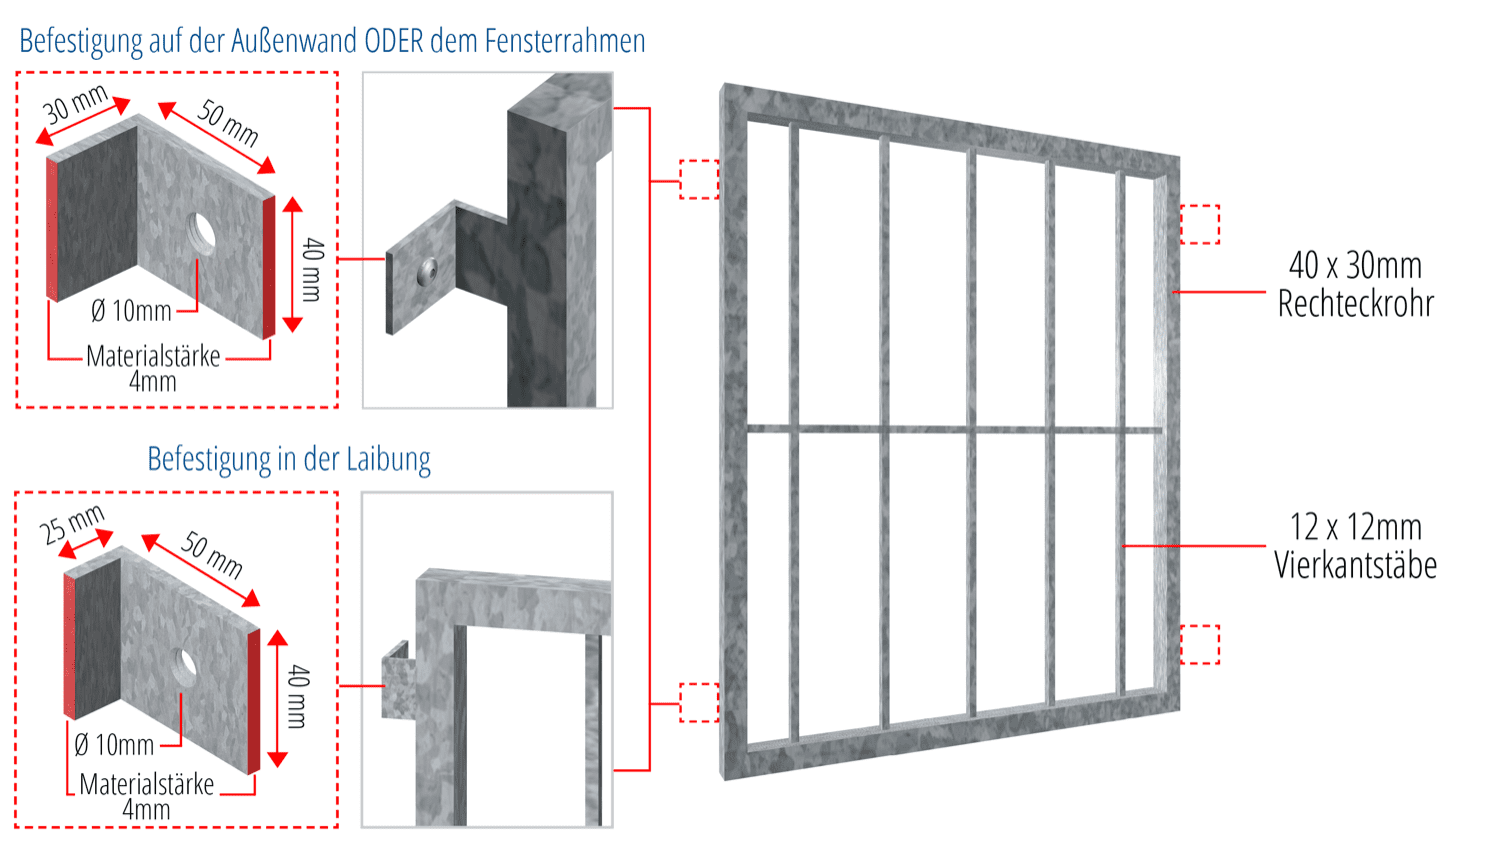 Grille de défense pour fenêtres en acier galvanisé barre verticale 